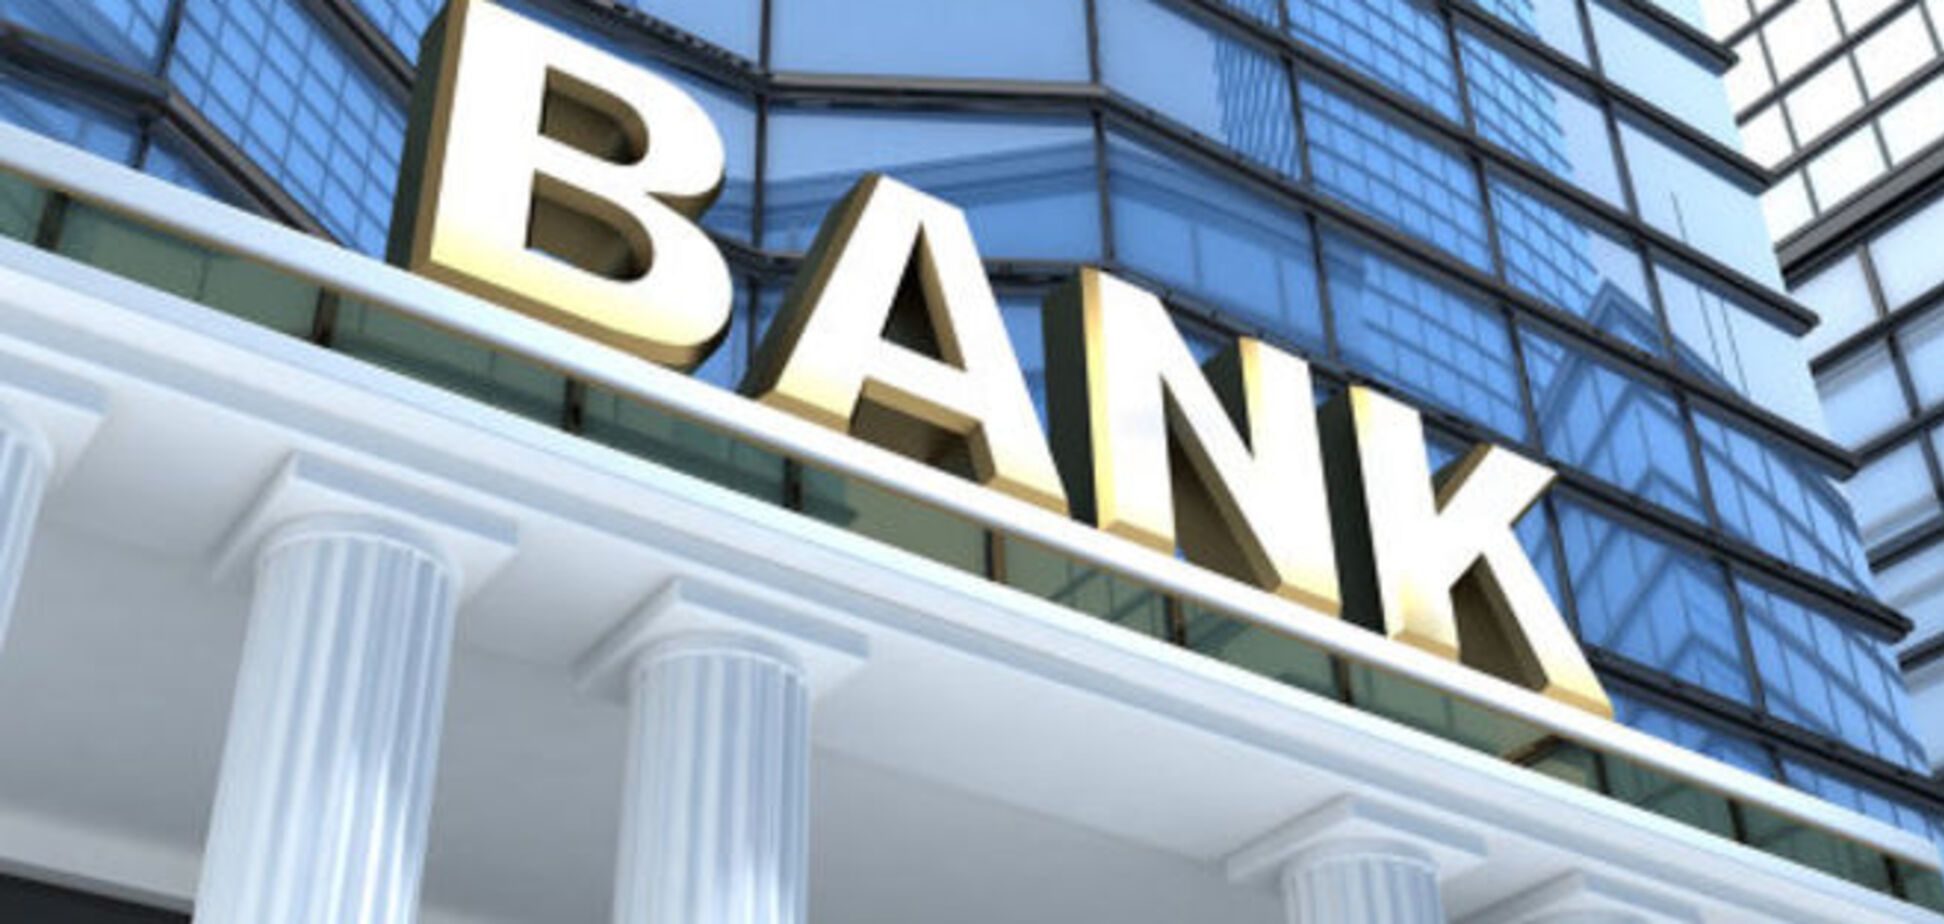 Пять крупных банков мира собираются наказать за манипуляции с валютой